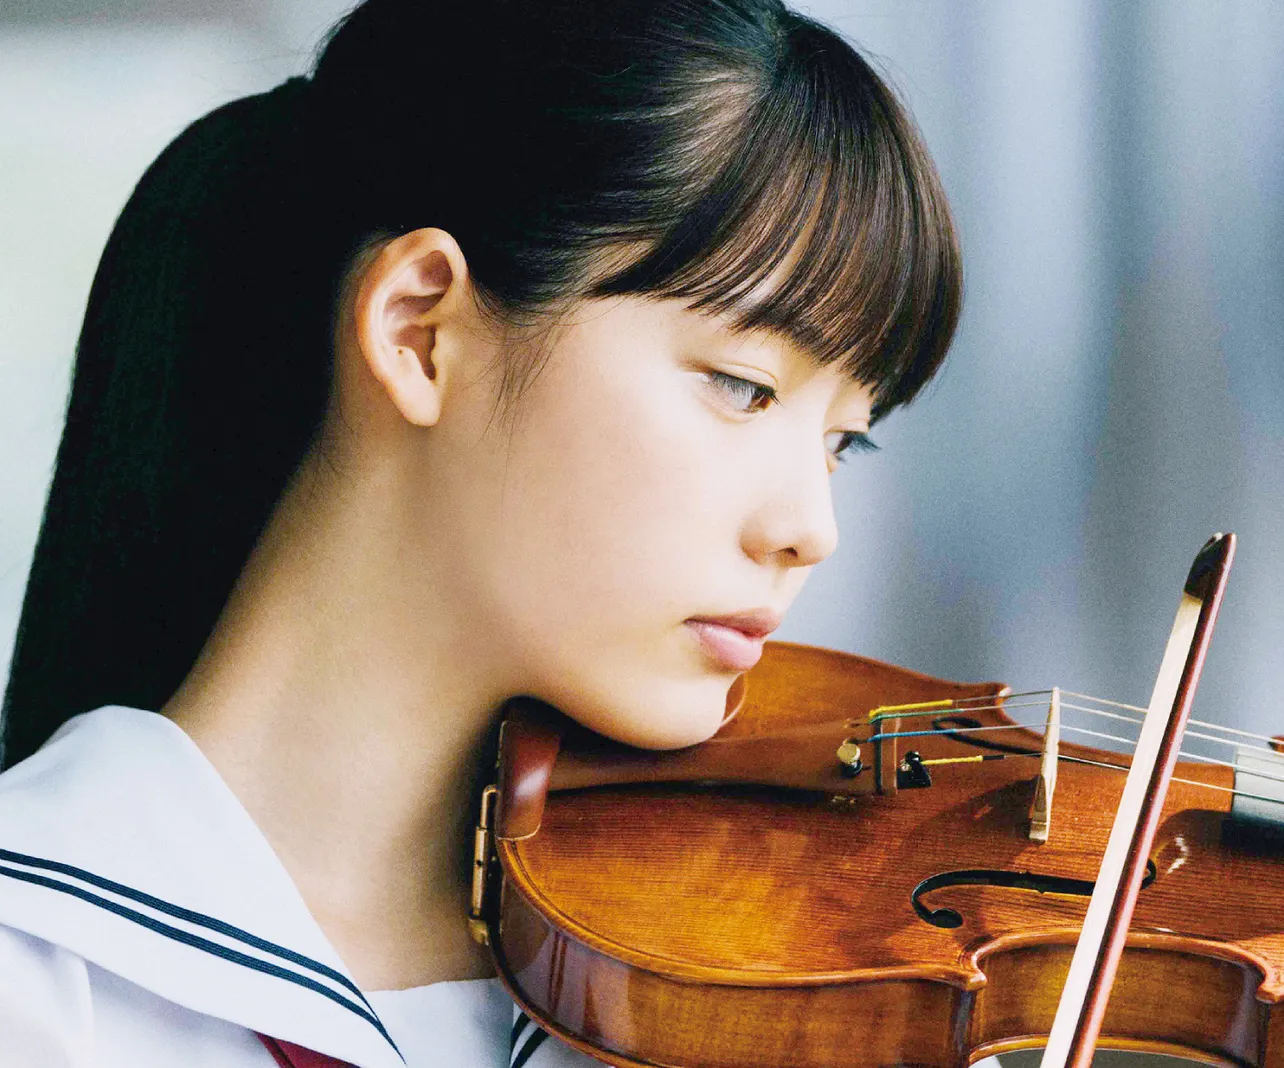 映画「いなくなれ、群青」でバイオリン奏者の中学生を演じる中村里帆